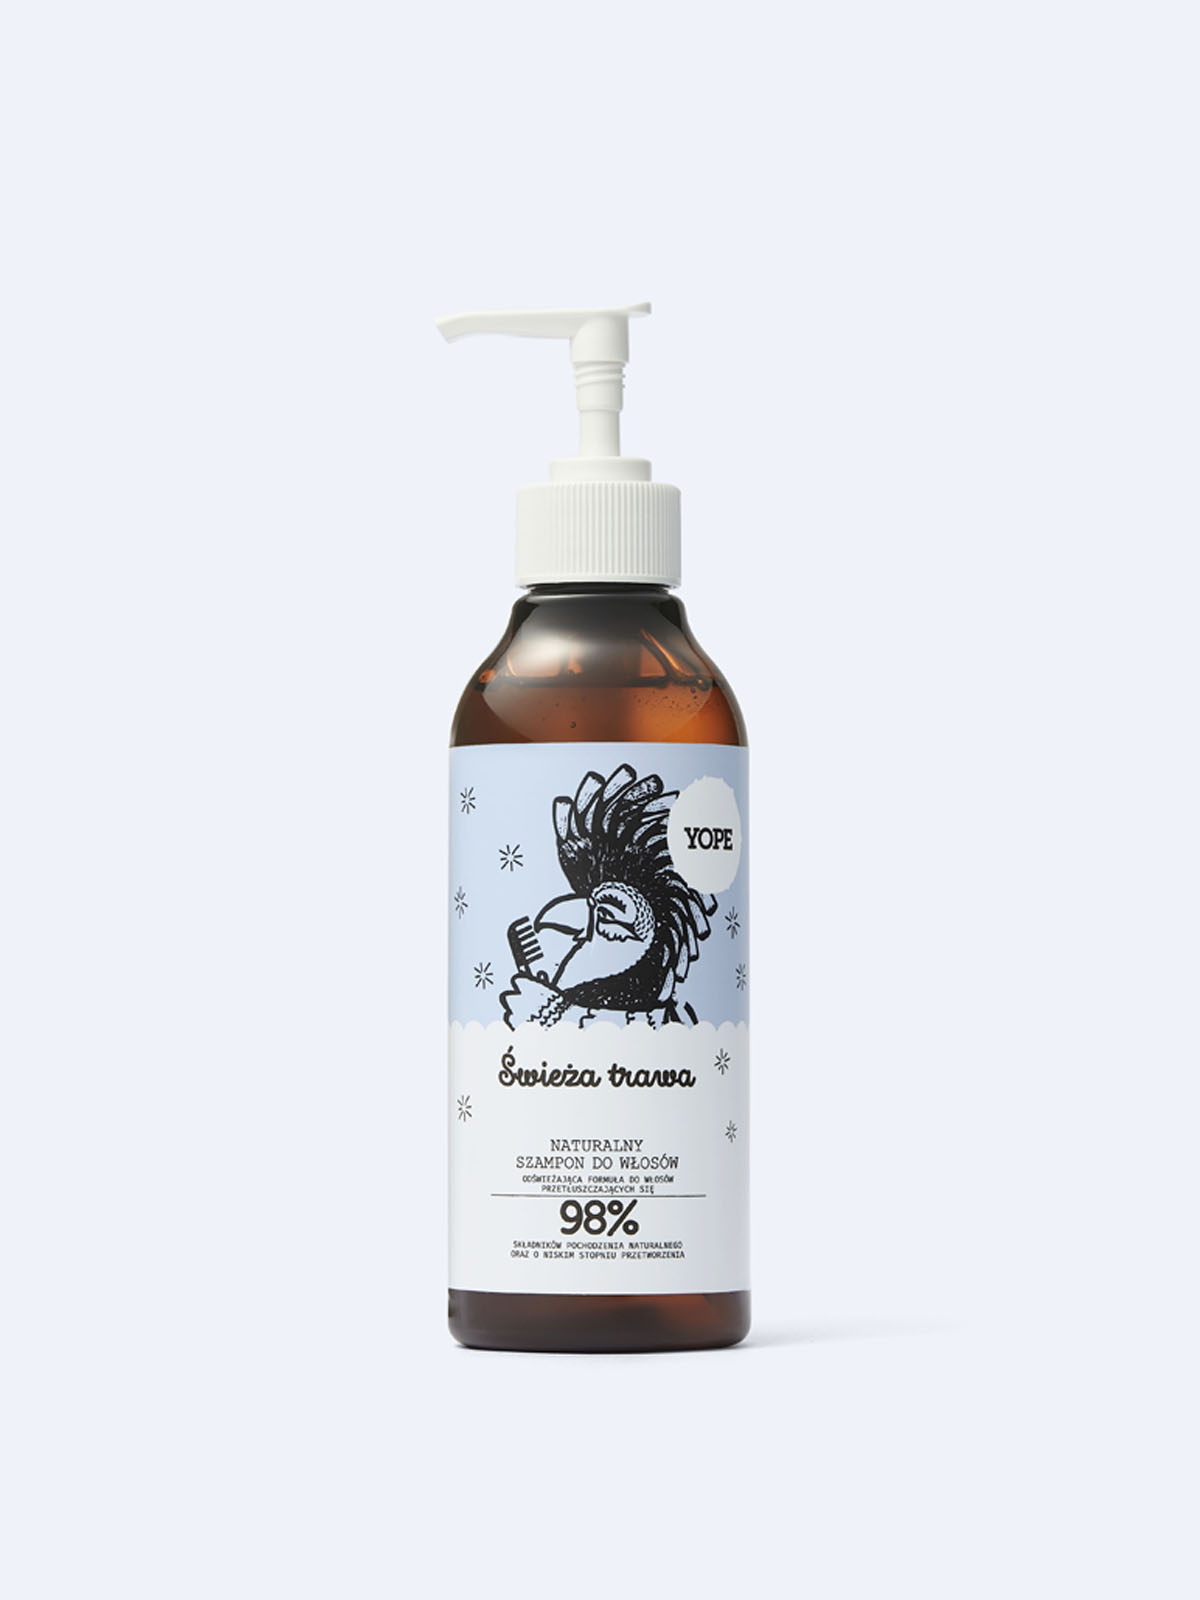 yope świeża trawa szampon do włosów 300 ml